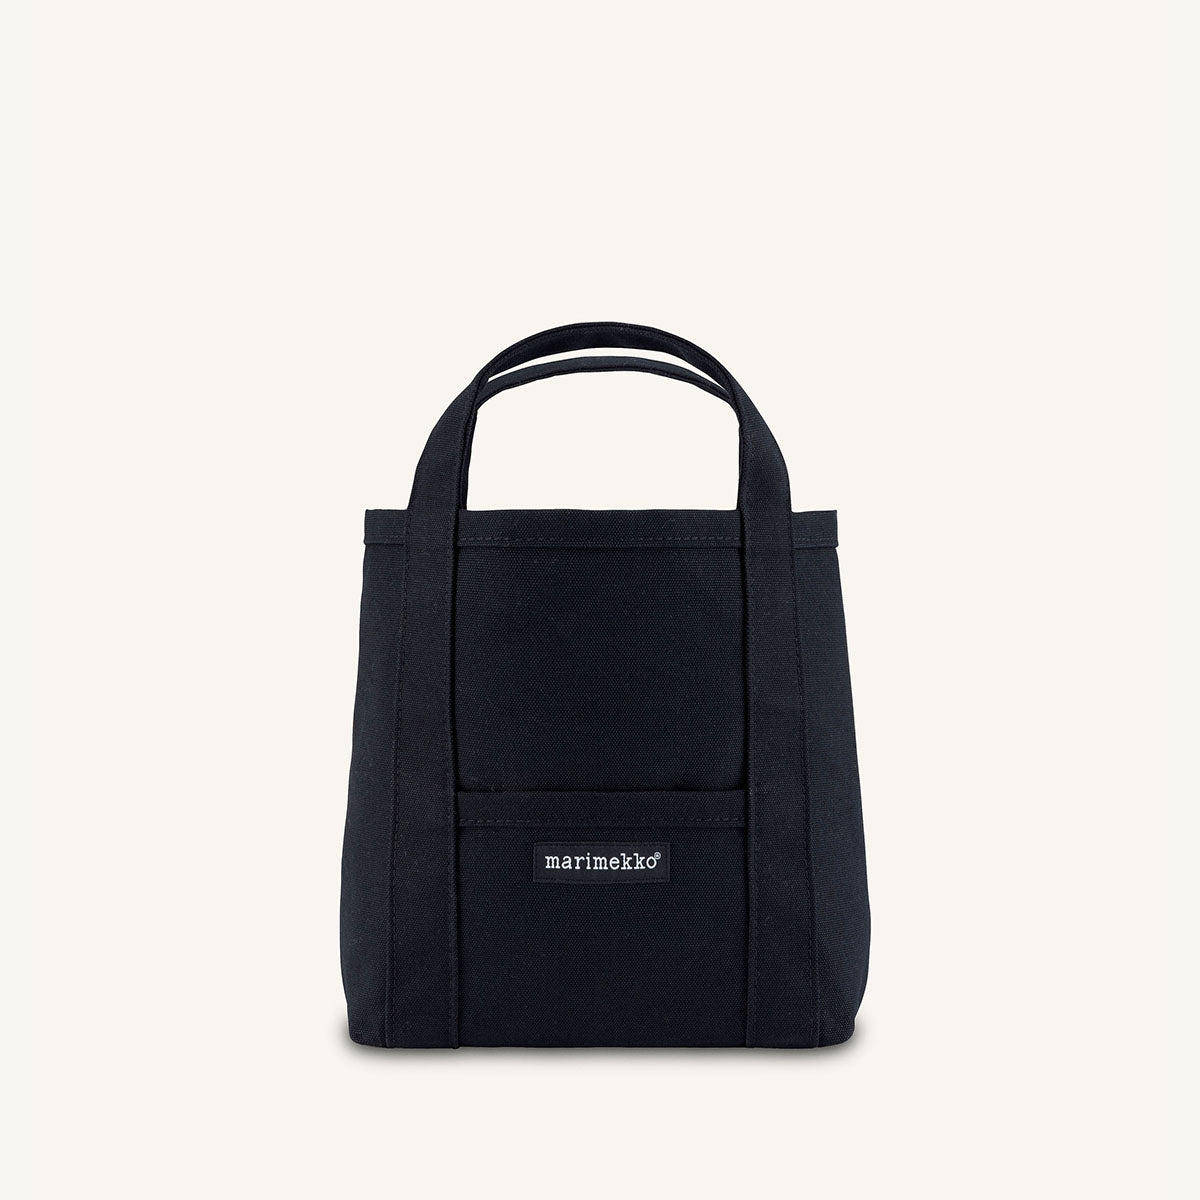 Marimekko - Mini Peruskassi 2 bag - 044400 - BLACK